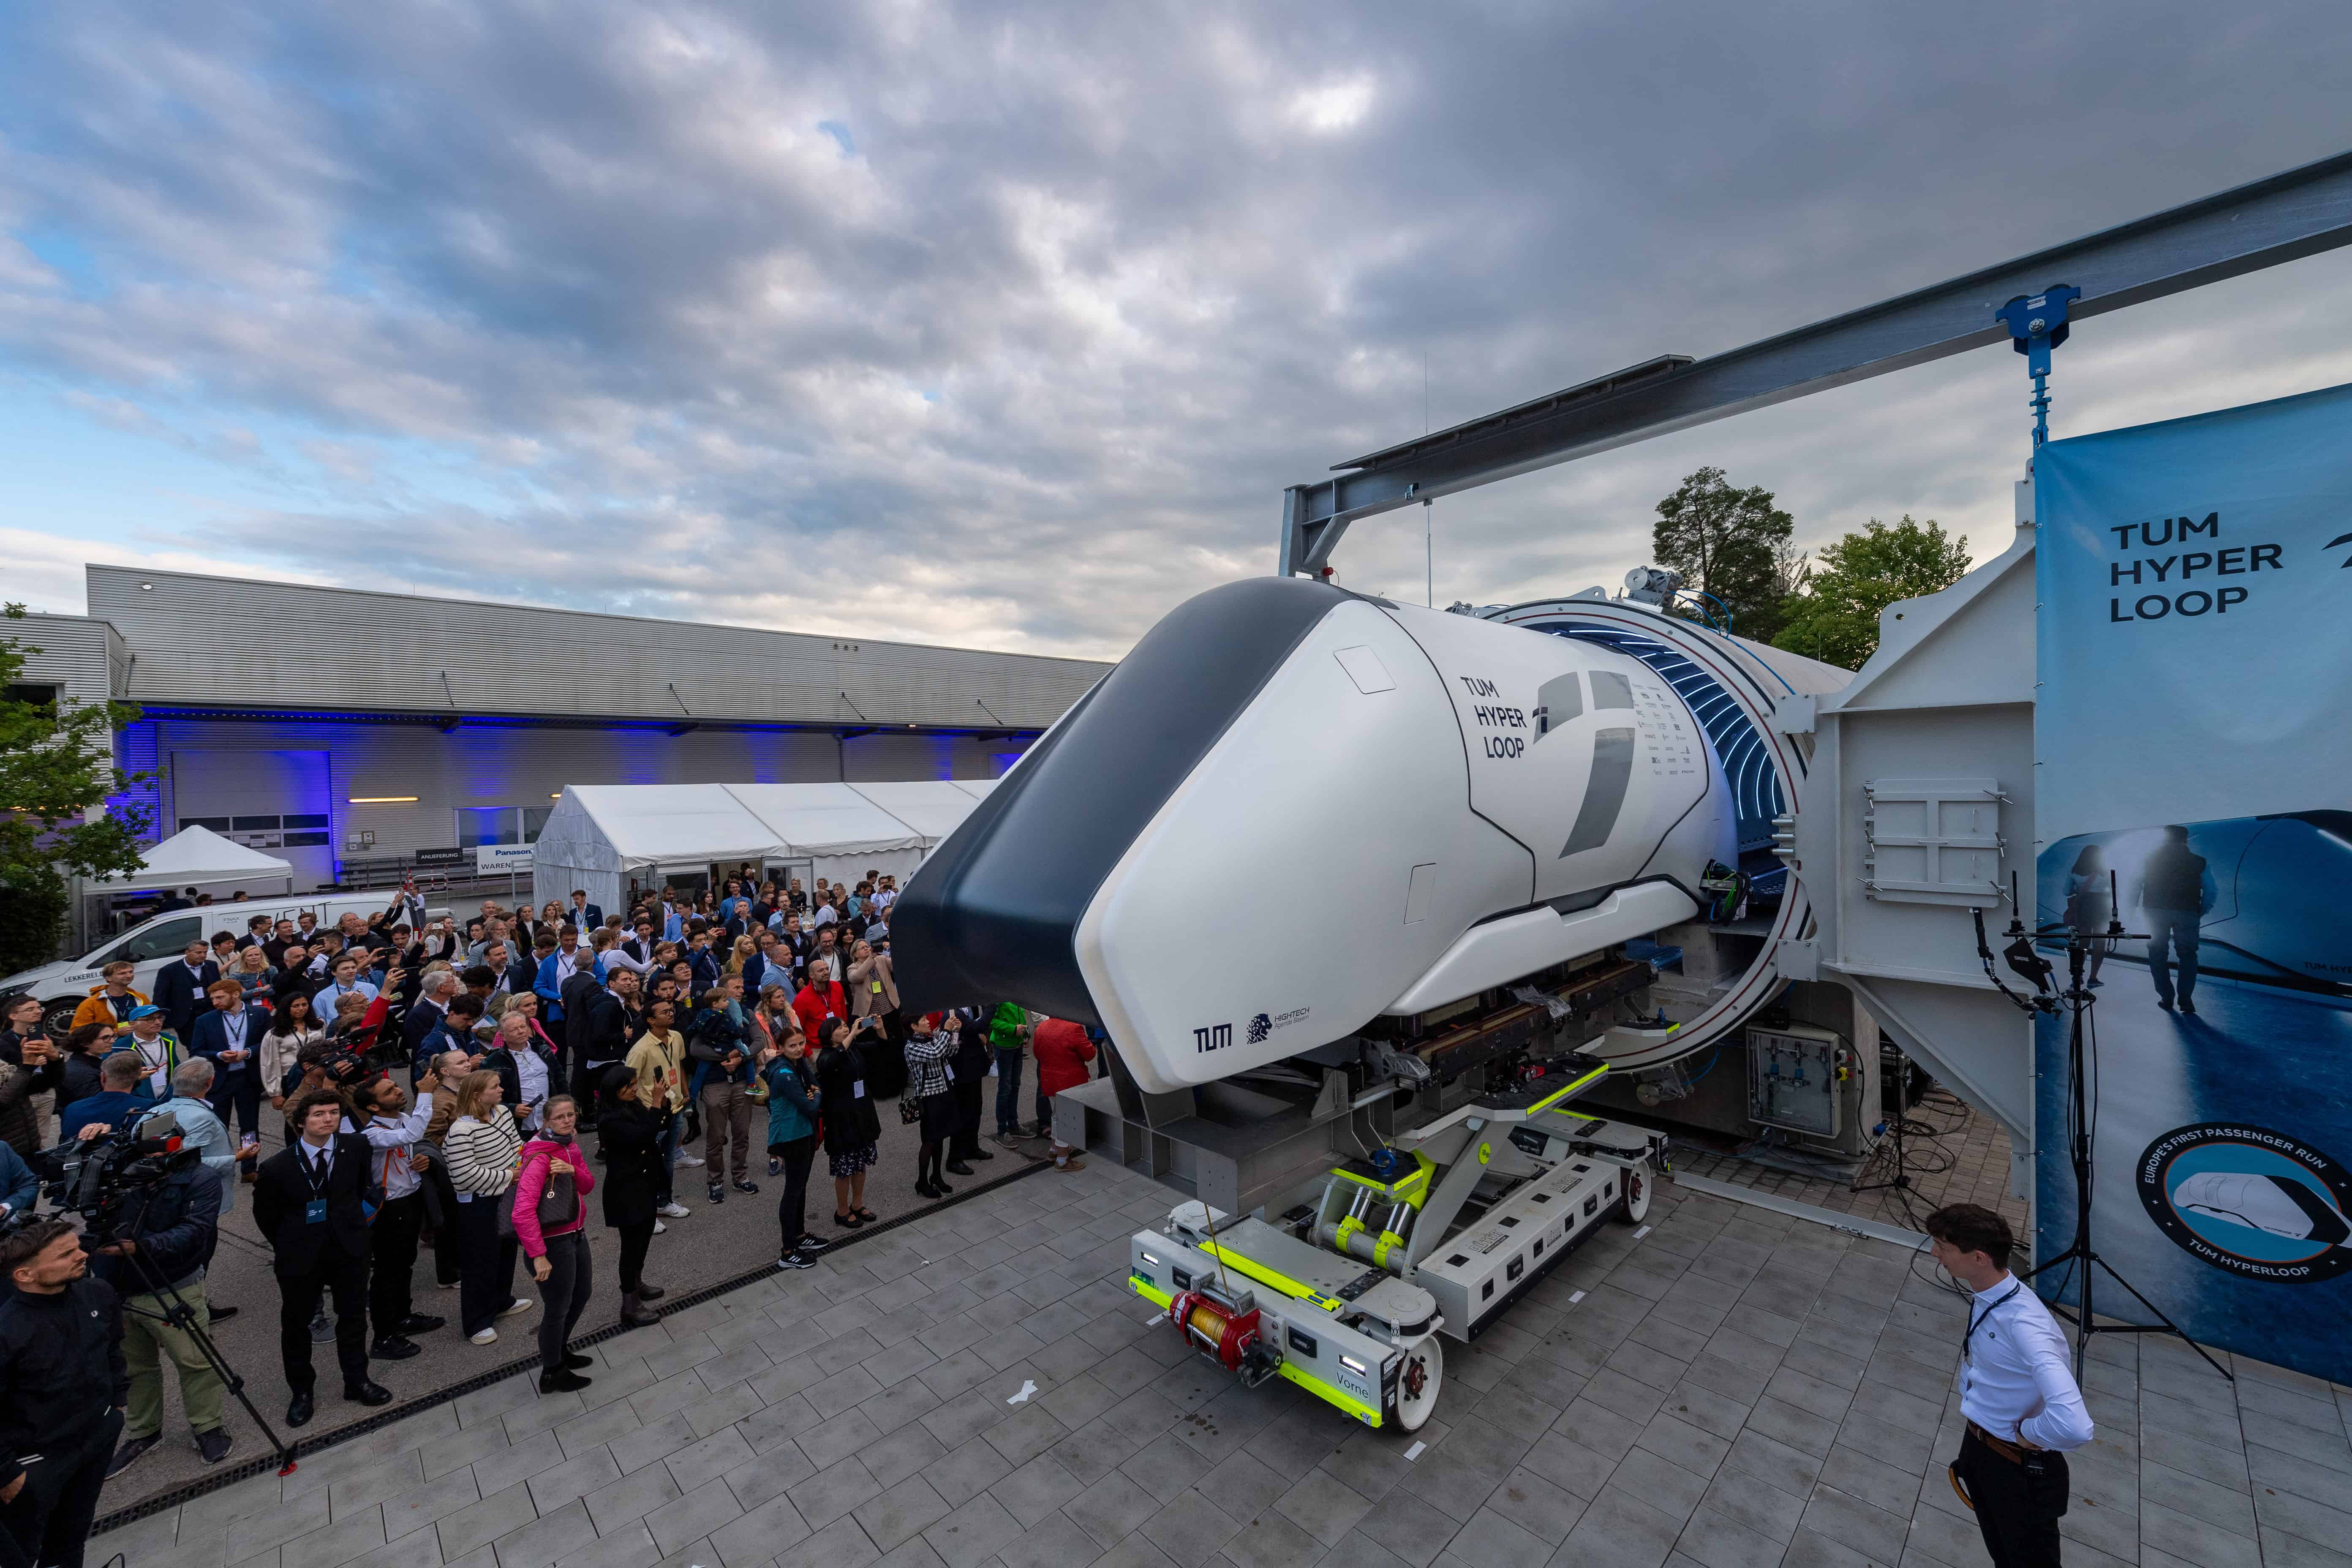 Hyperloop-geschiedenis in de maak: Europa's eerste testbaan op ware grootte is in München in gebruik genomen